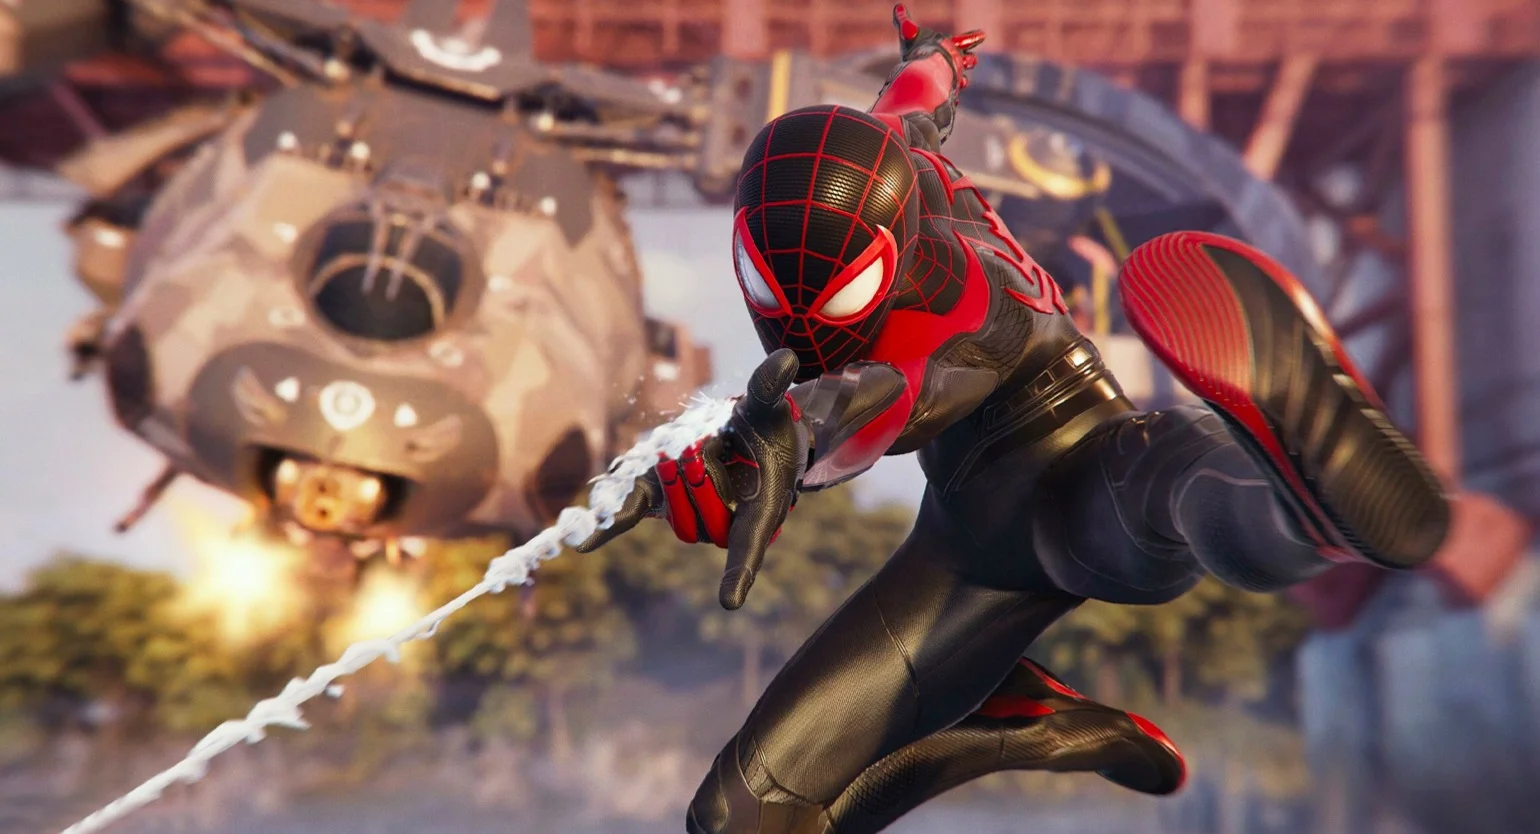 Couverture : capture d'écran de Marvelʼs Spider-Man 2